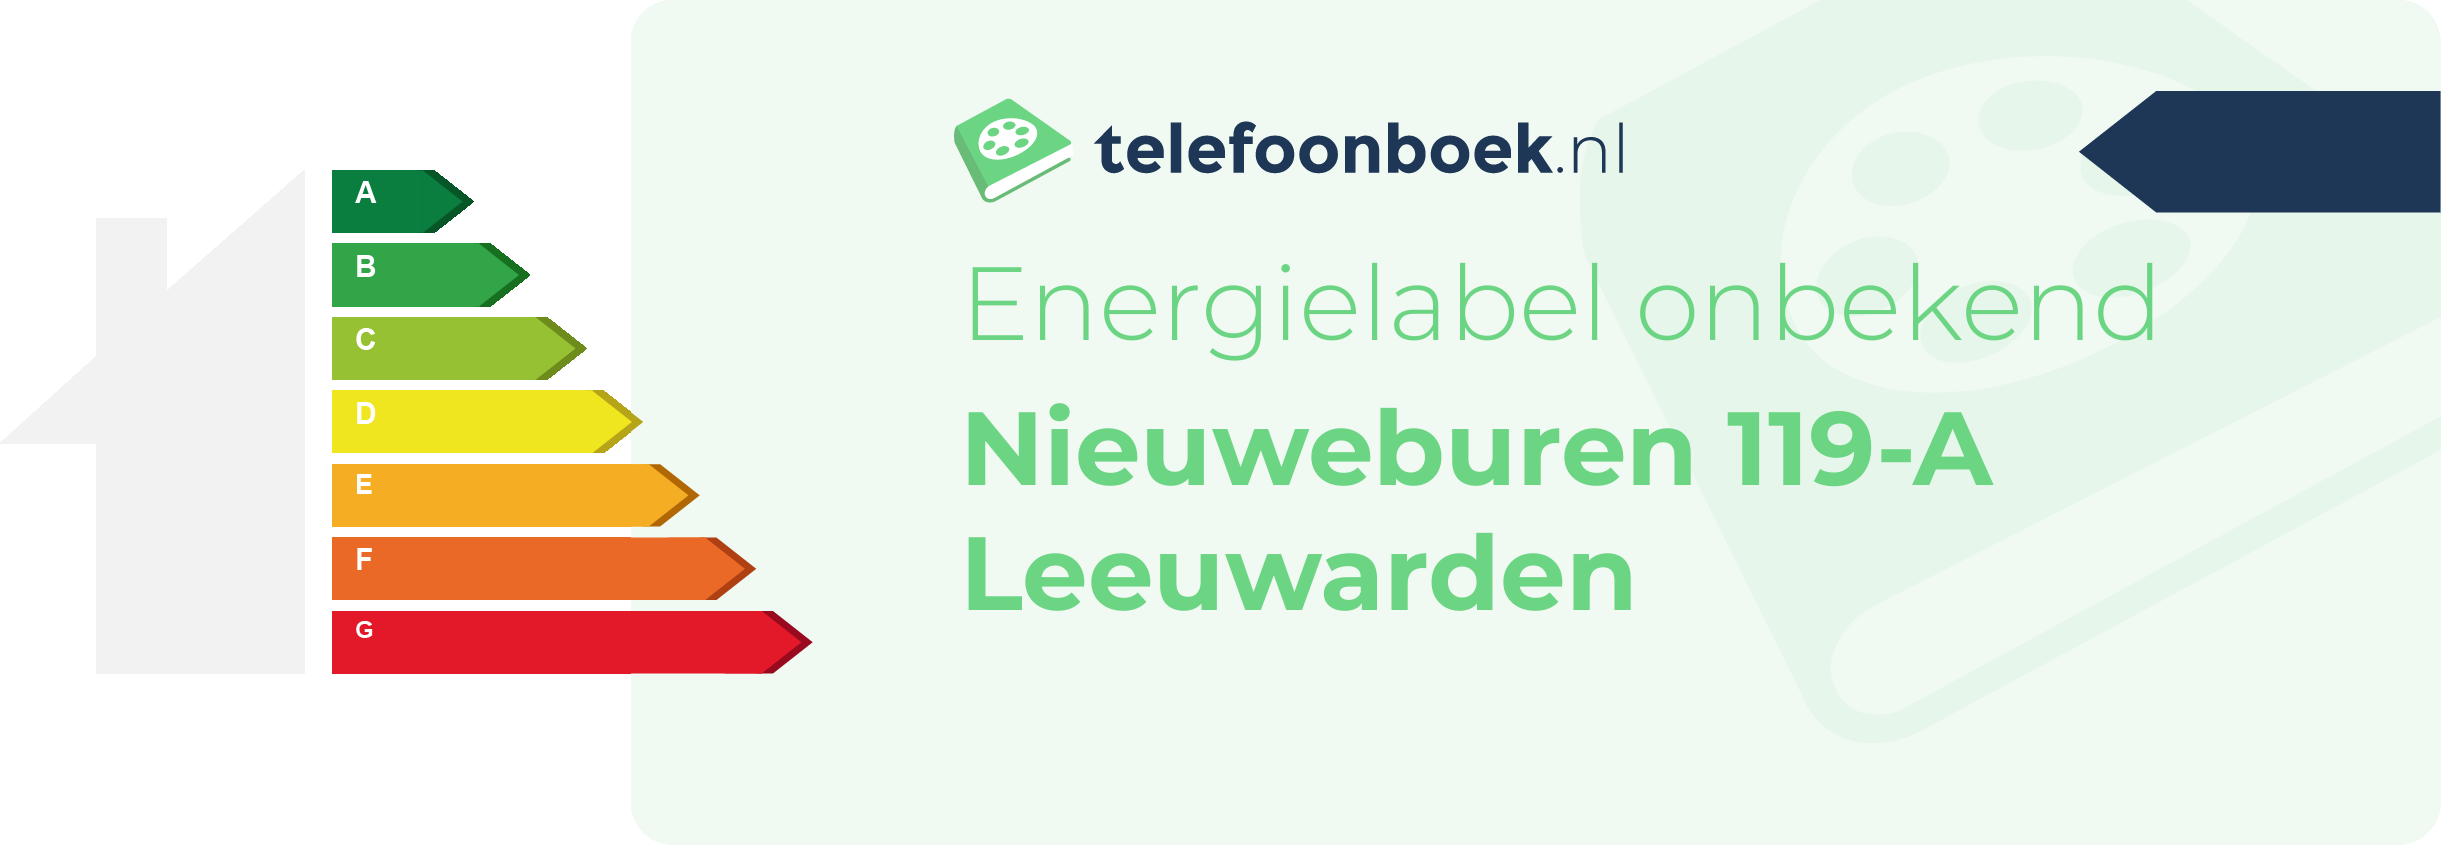 Energielabel Nieuweburen 119-A Leeuwarden